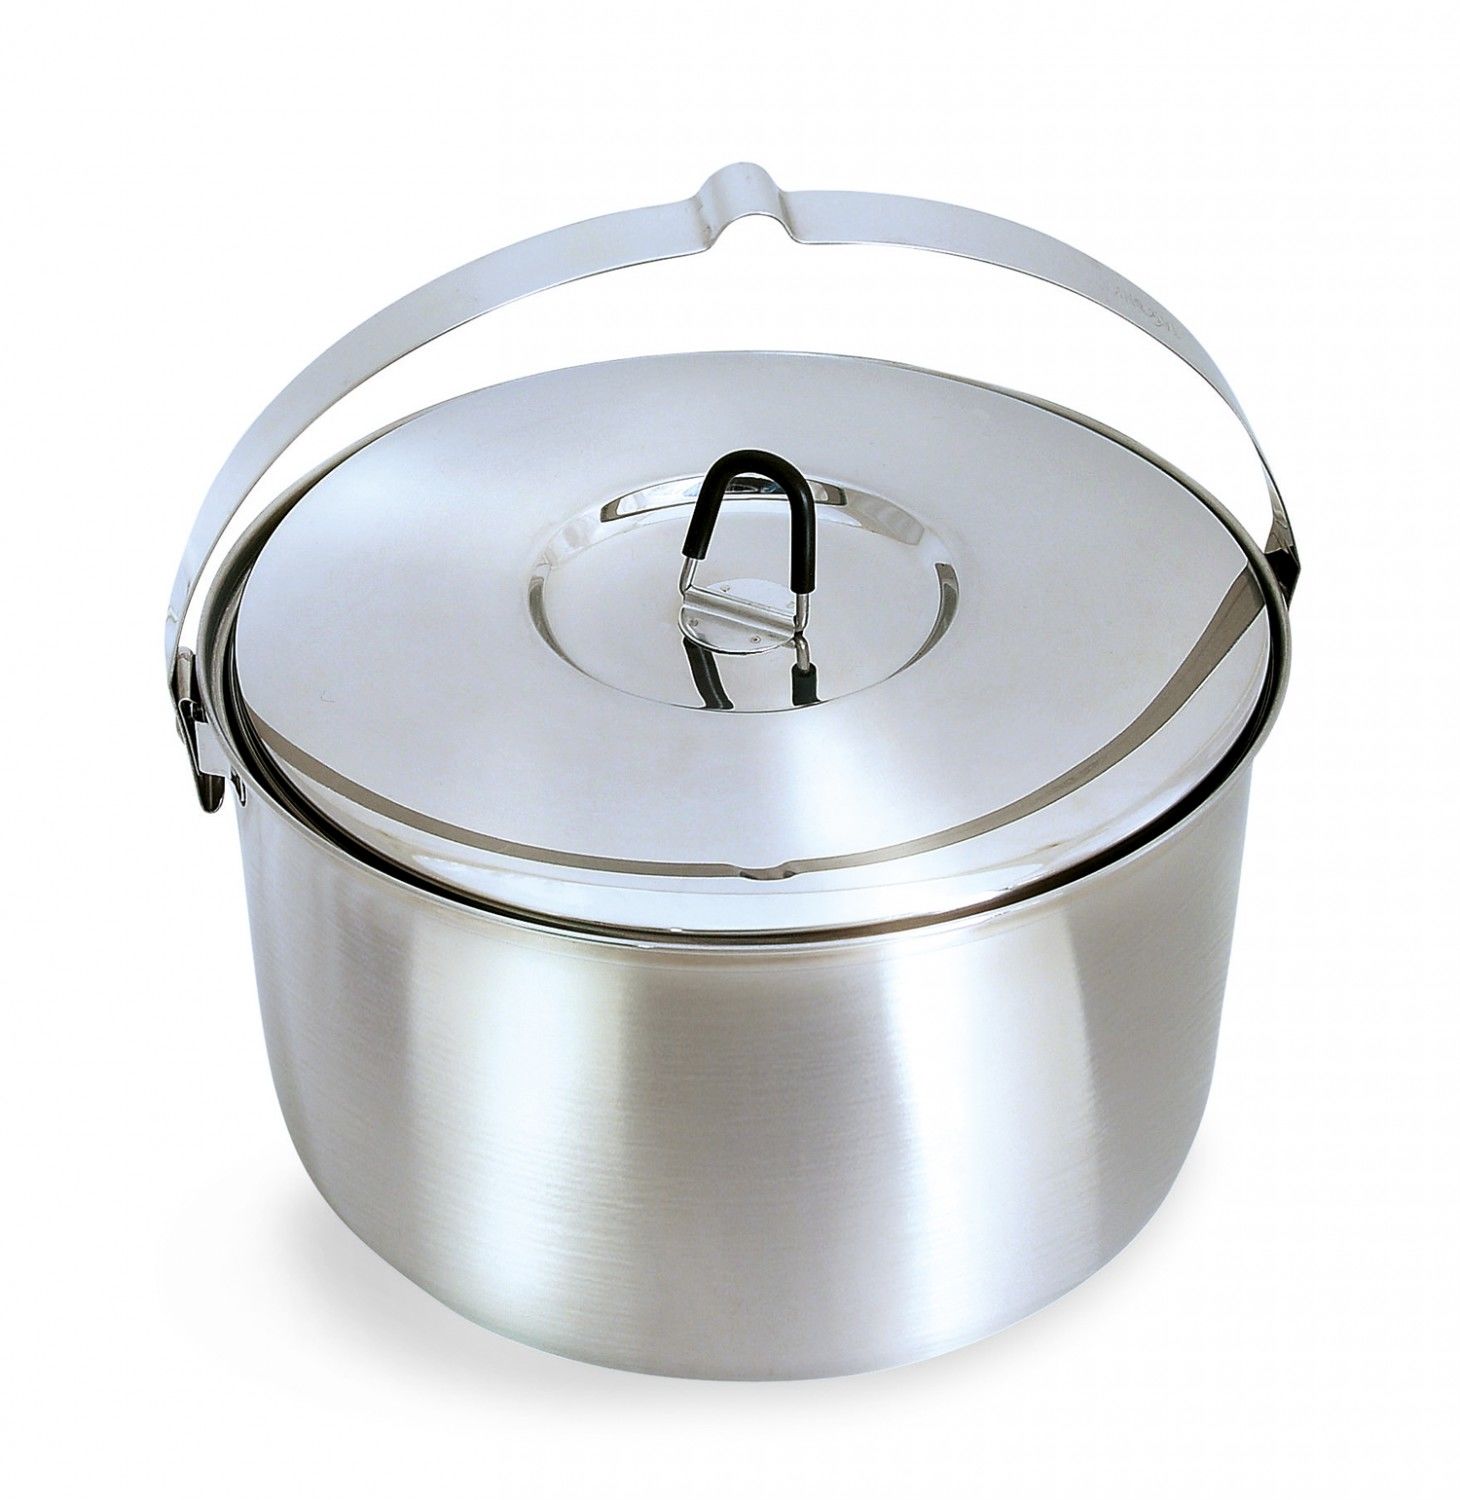 Tatonka Family Pot 6-0 L Grau- Geschirr und Besteck- Grsse 6l - Farbe Silver unter Tatonka